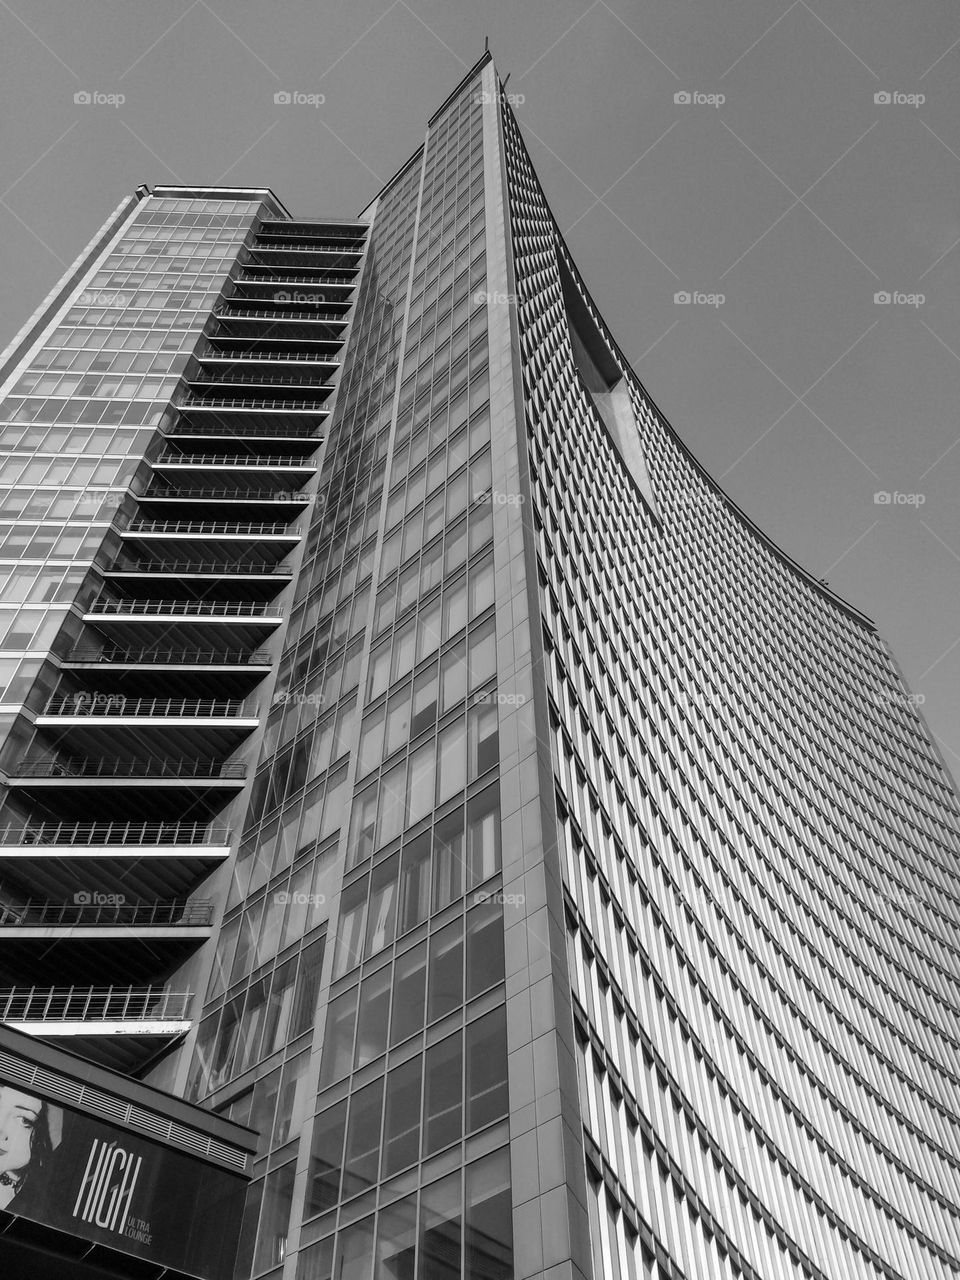 Skyscraper in black and white 